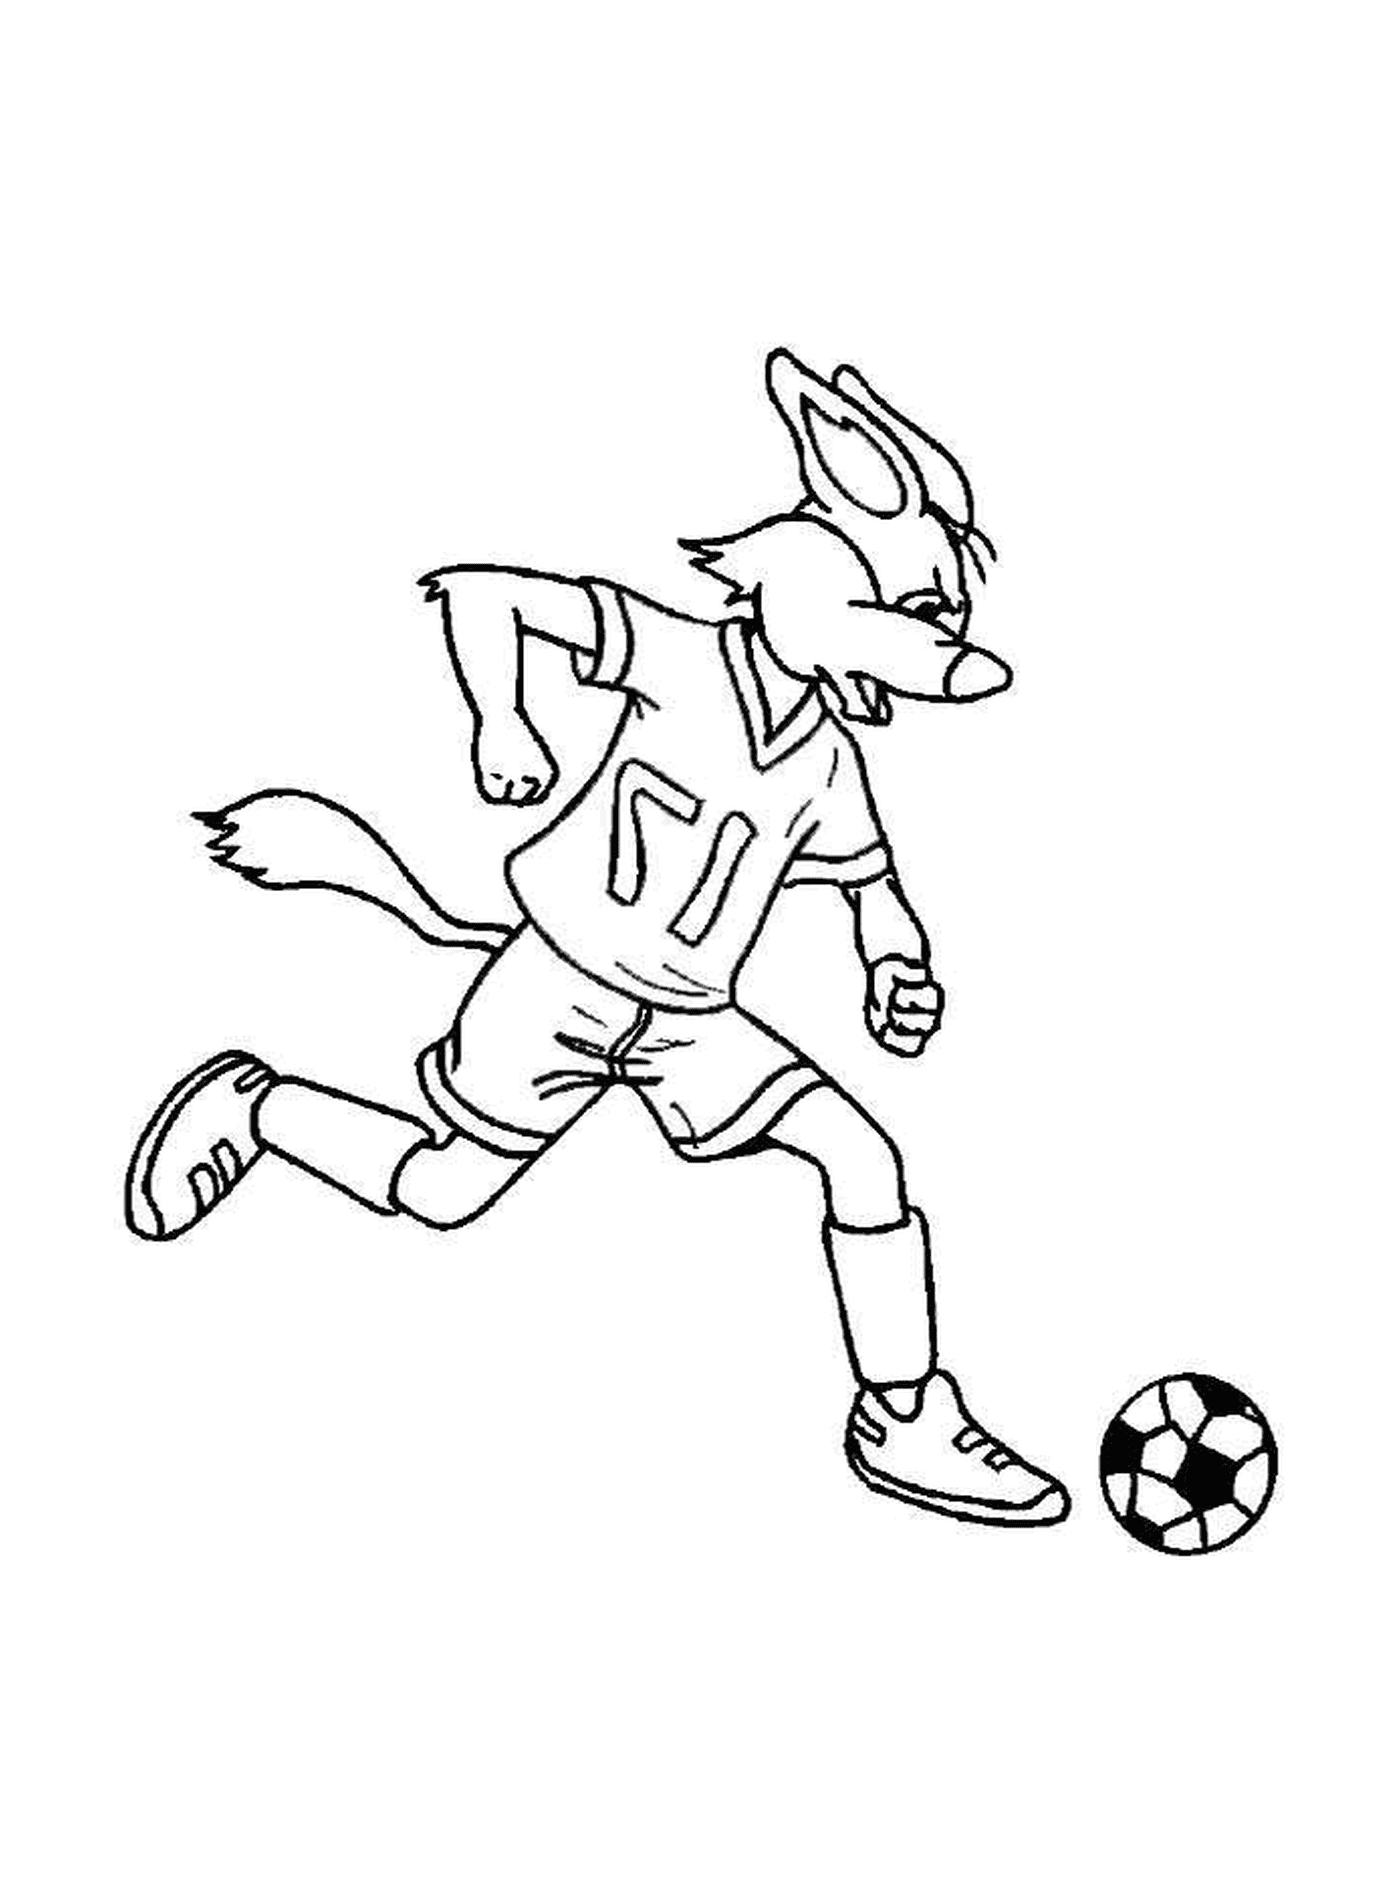  Un conejo juega al fútbol 